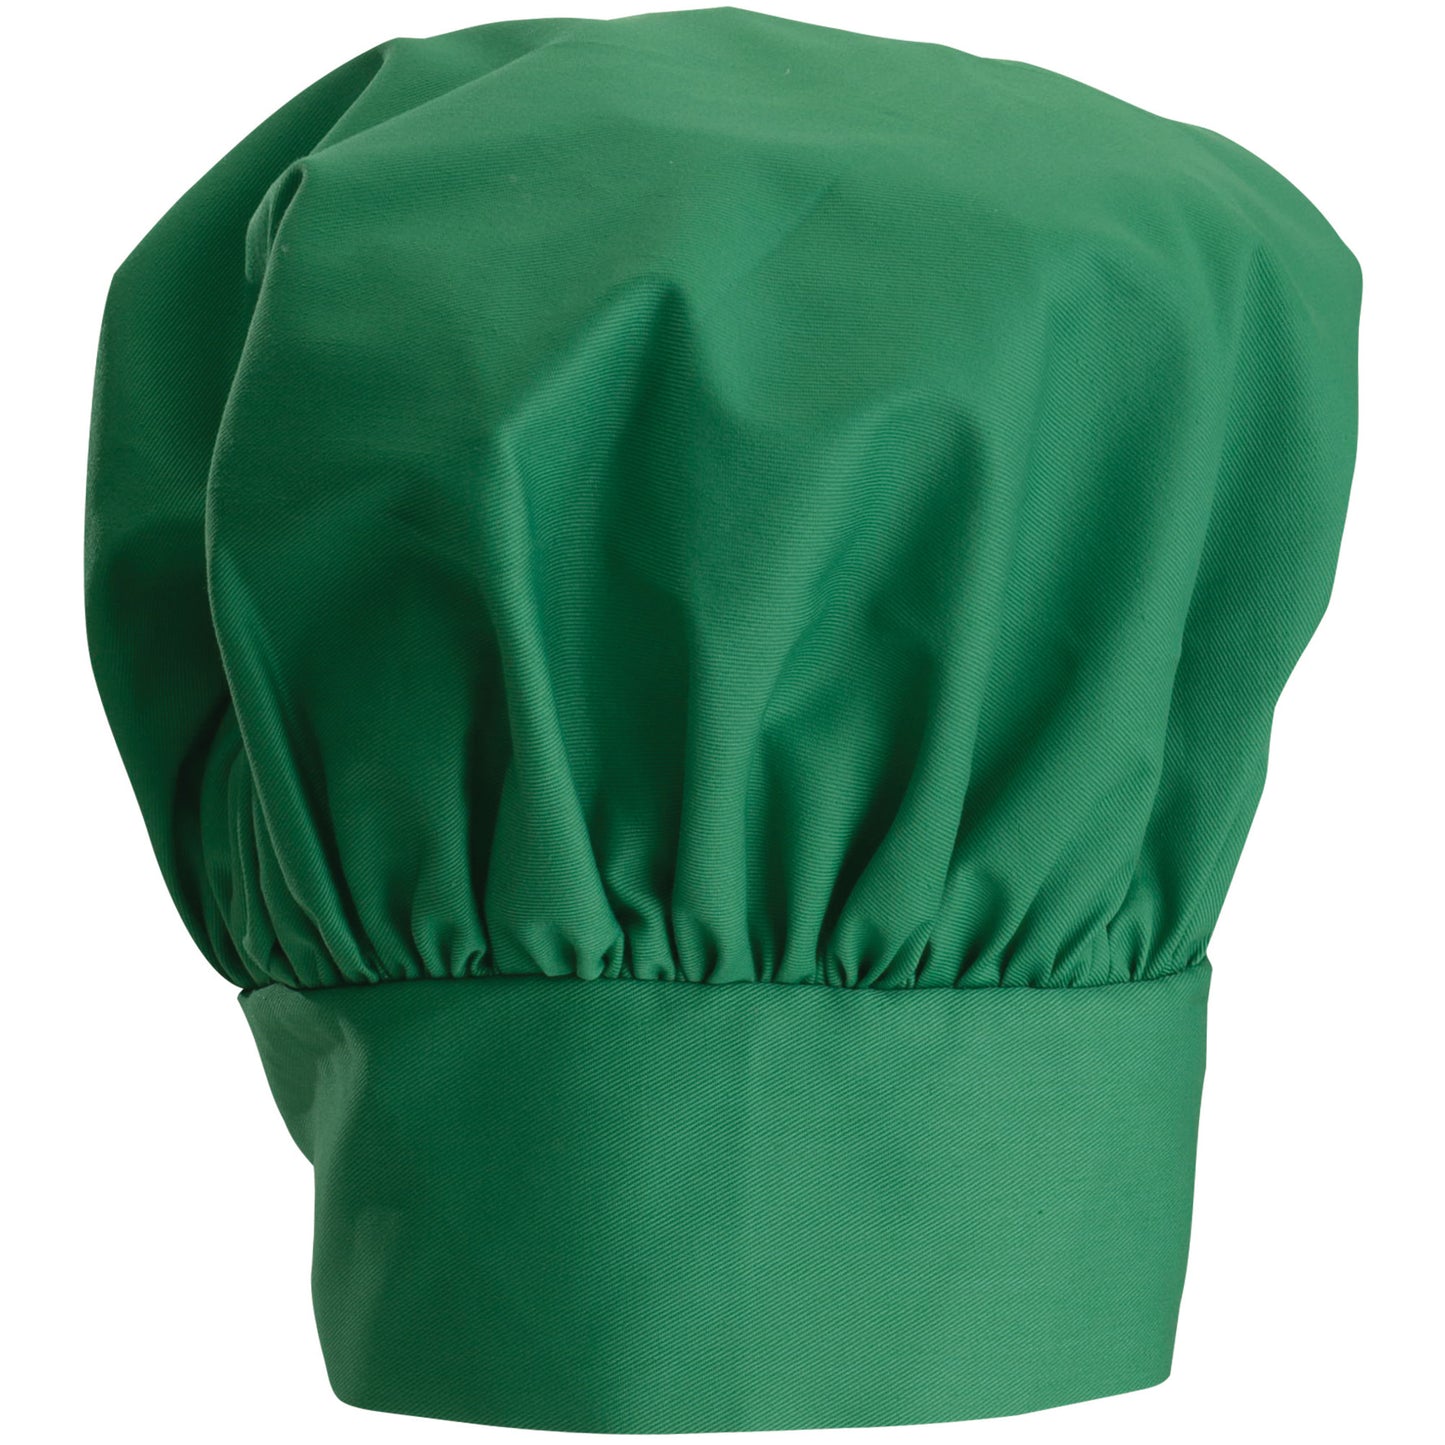 CH-13LG - Chef Hat, Velcro Closure - Bright Green